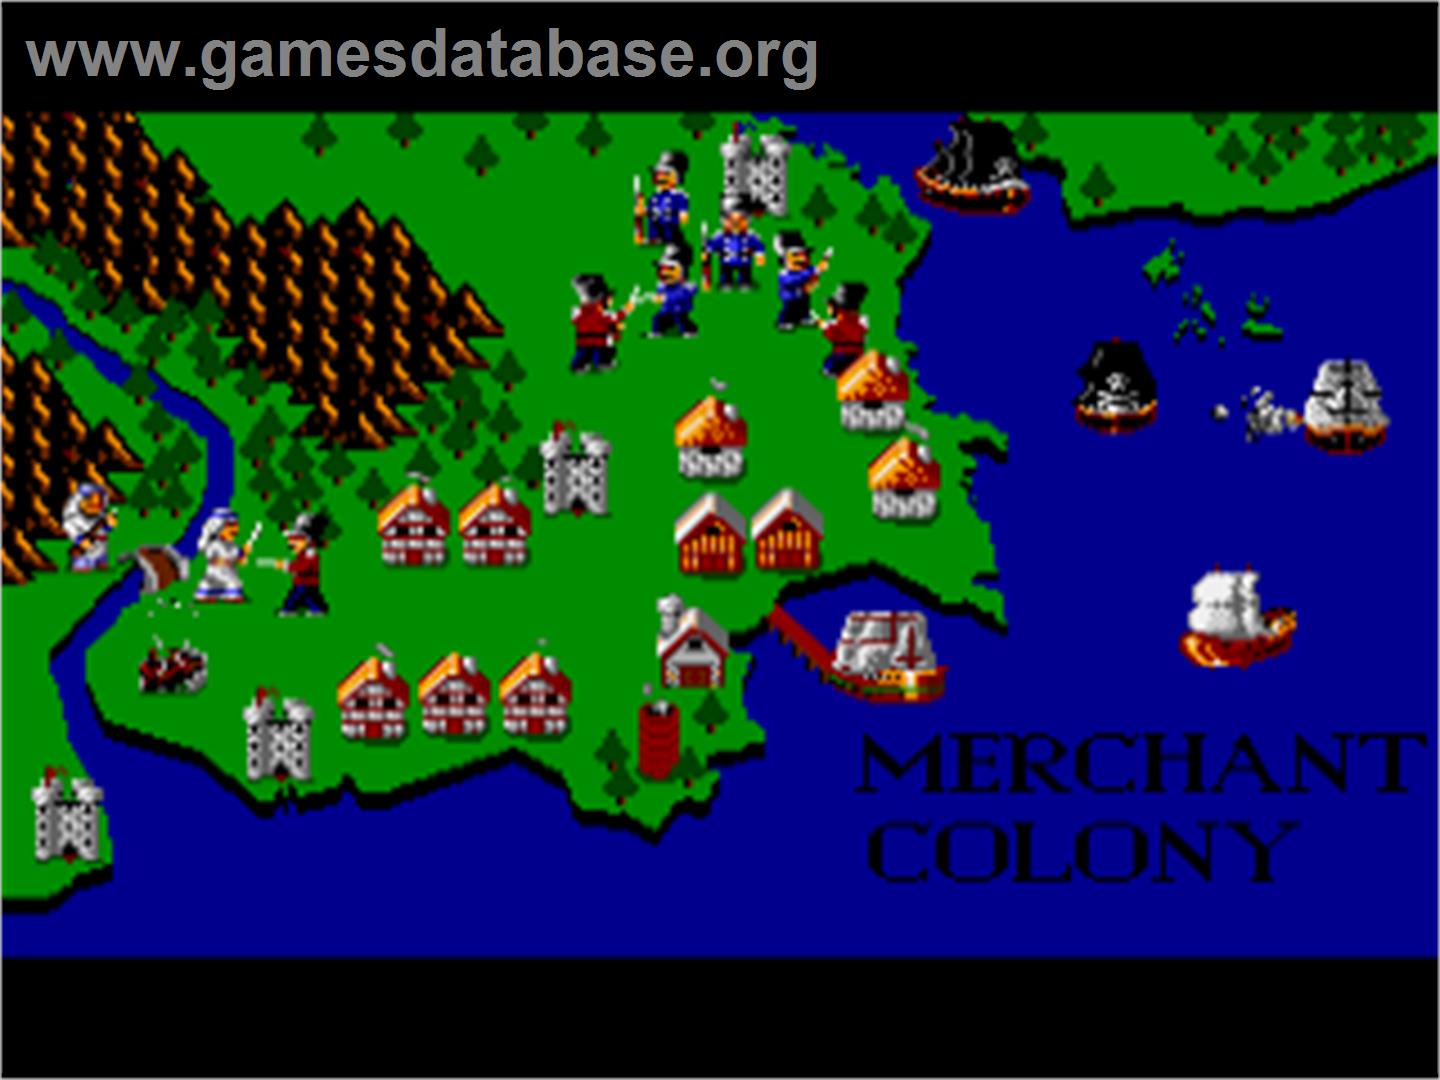 Merchant Colony - Commodore Amiga - Artwork - Title Screen